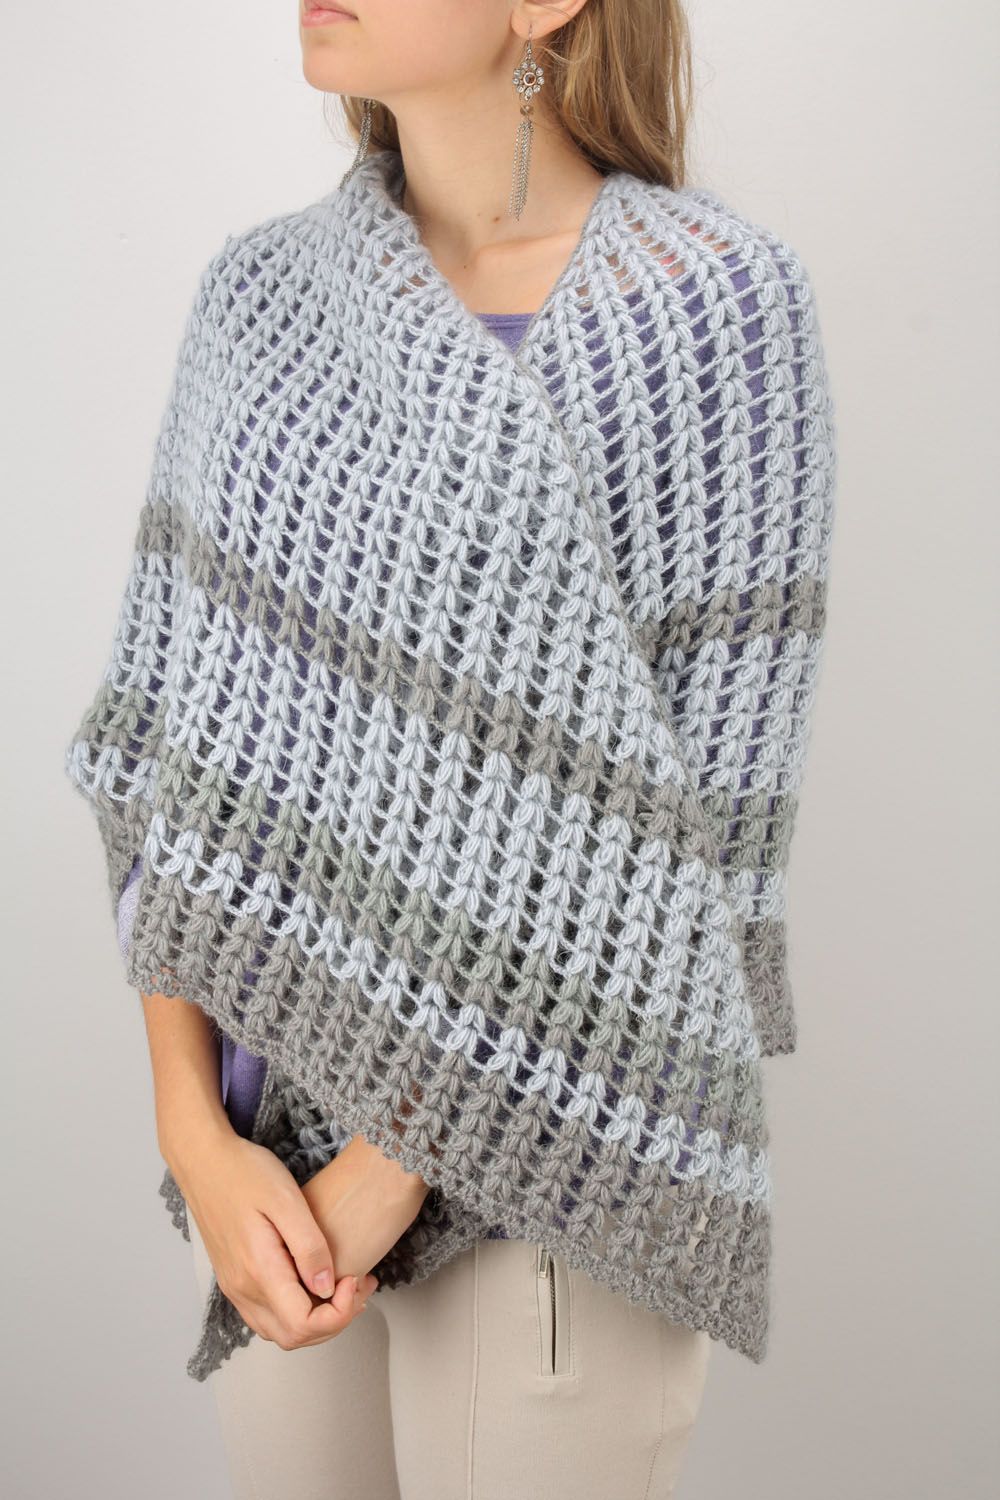 Châle en laine tricoté fait main gris chaud et joli accessoire pour femme photo 1